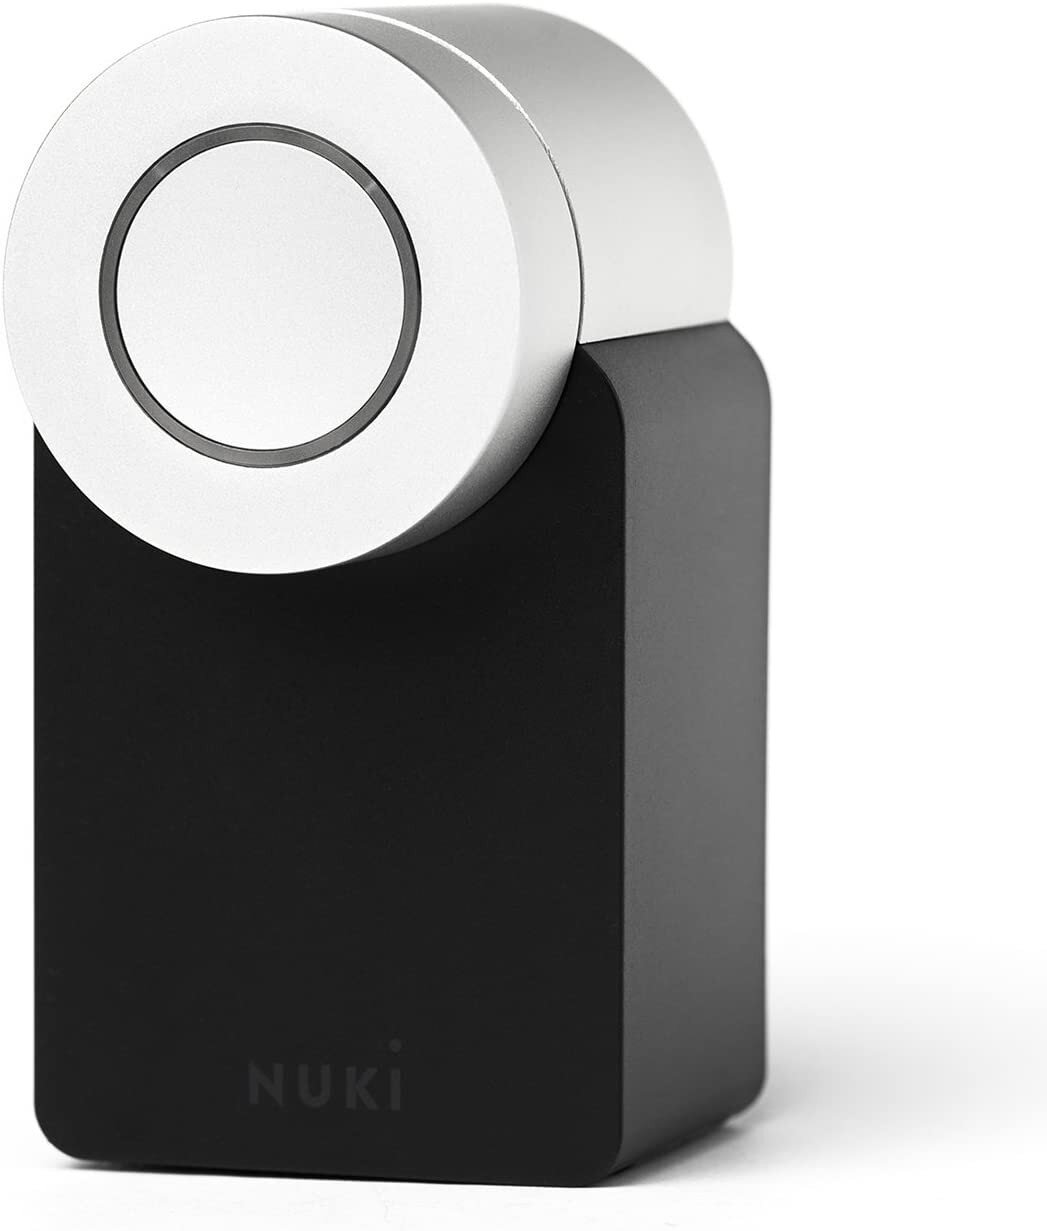 Buy Nuki Opener Set online in UAE - Tejar.com UAE